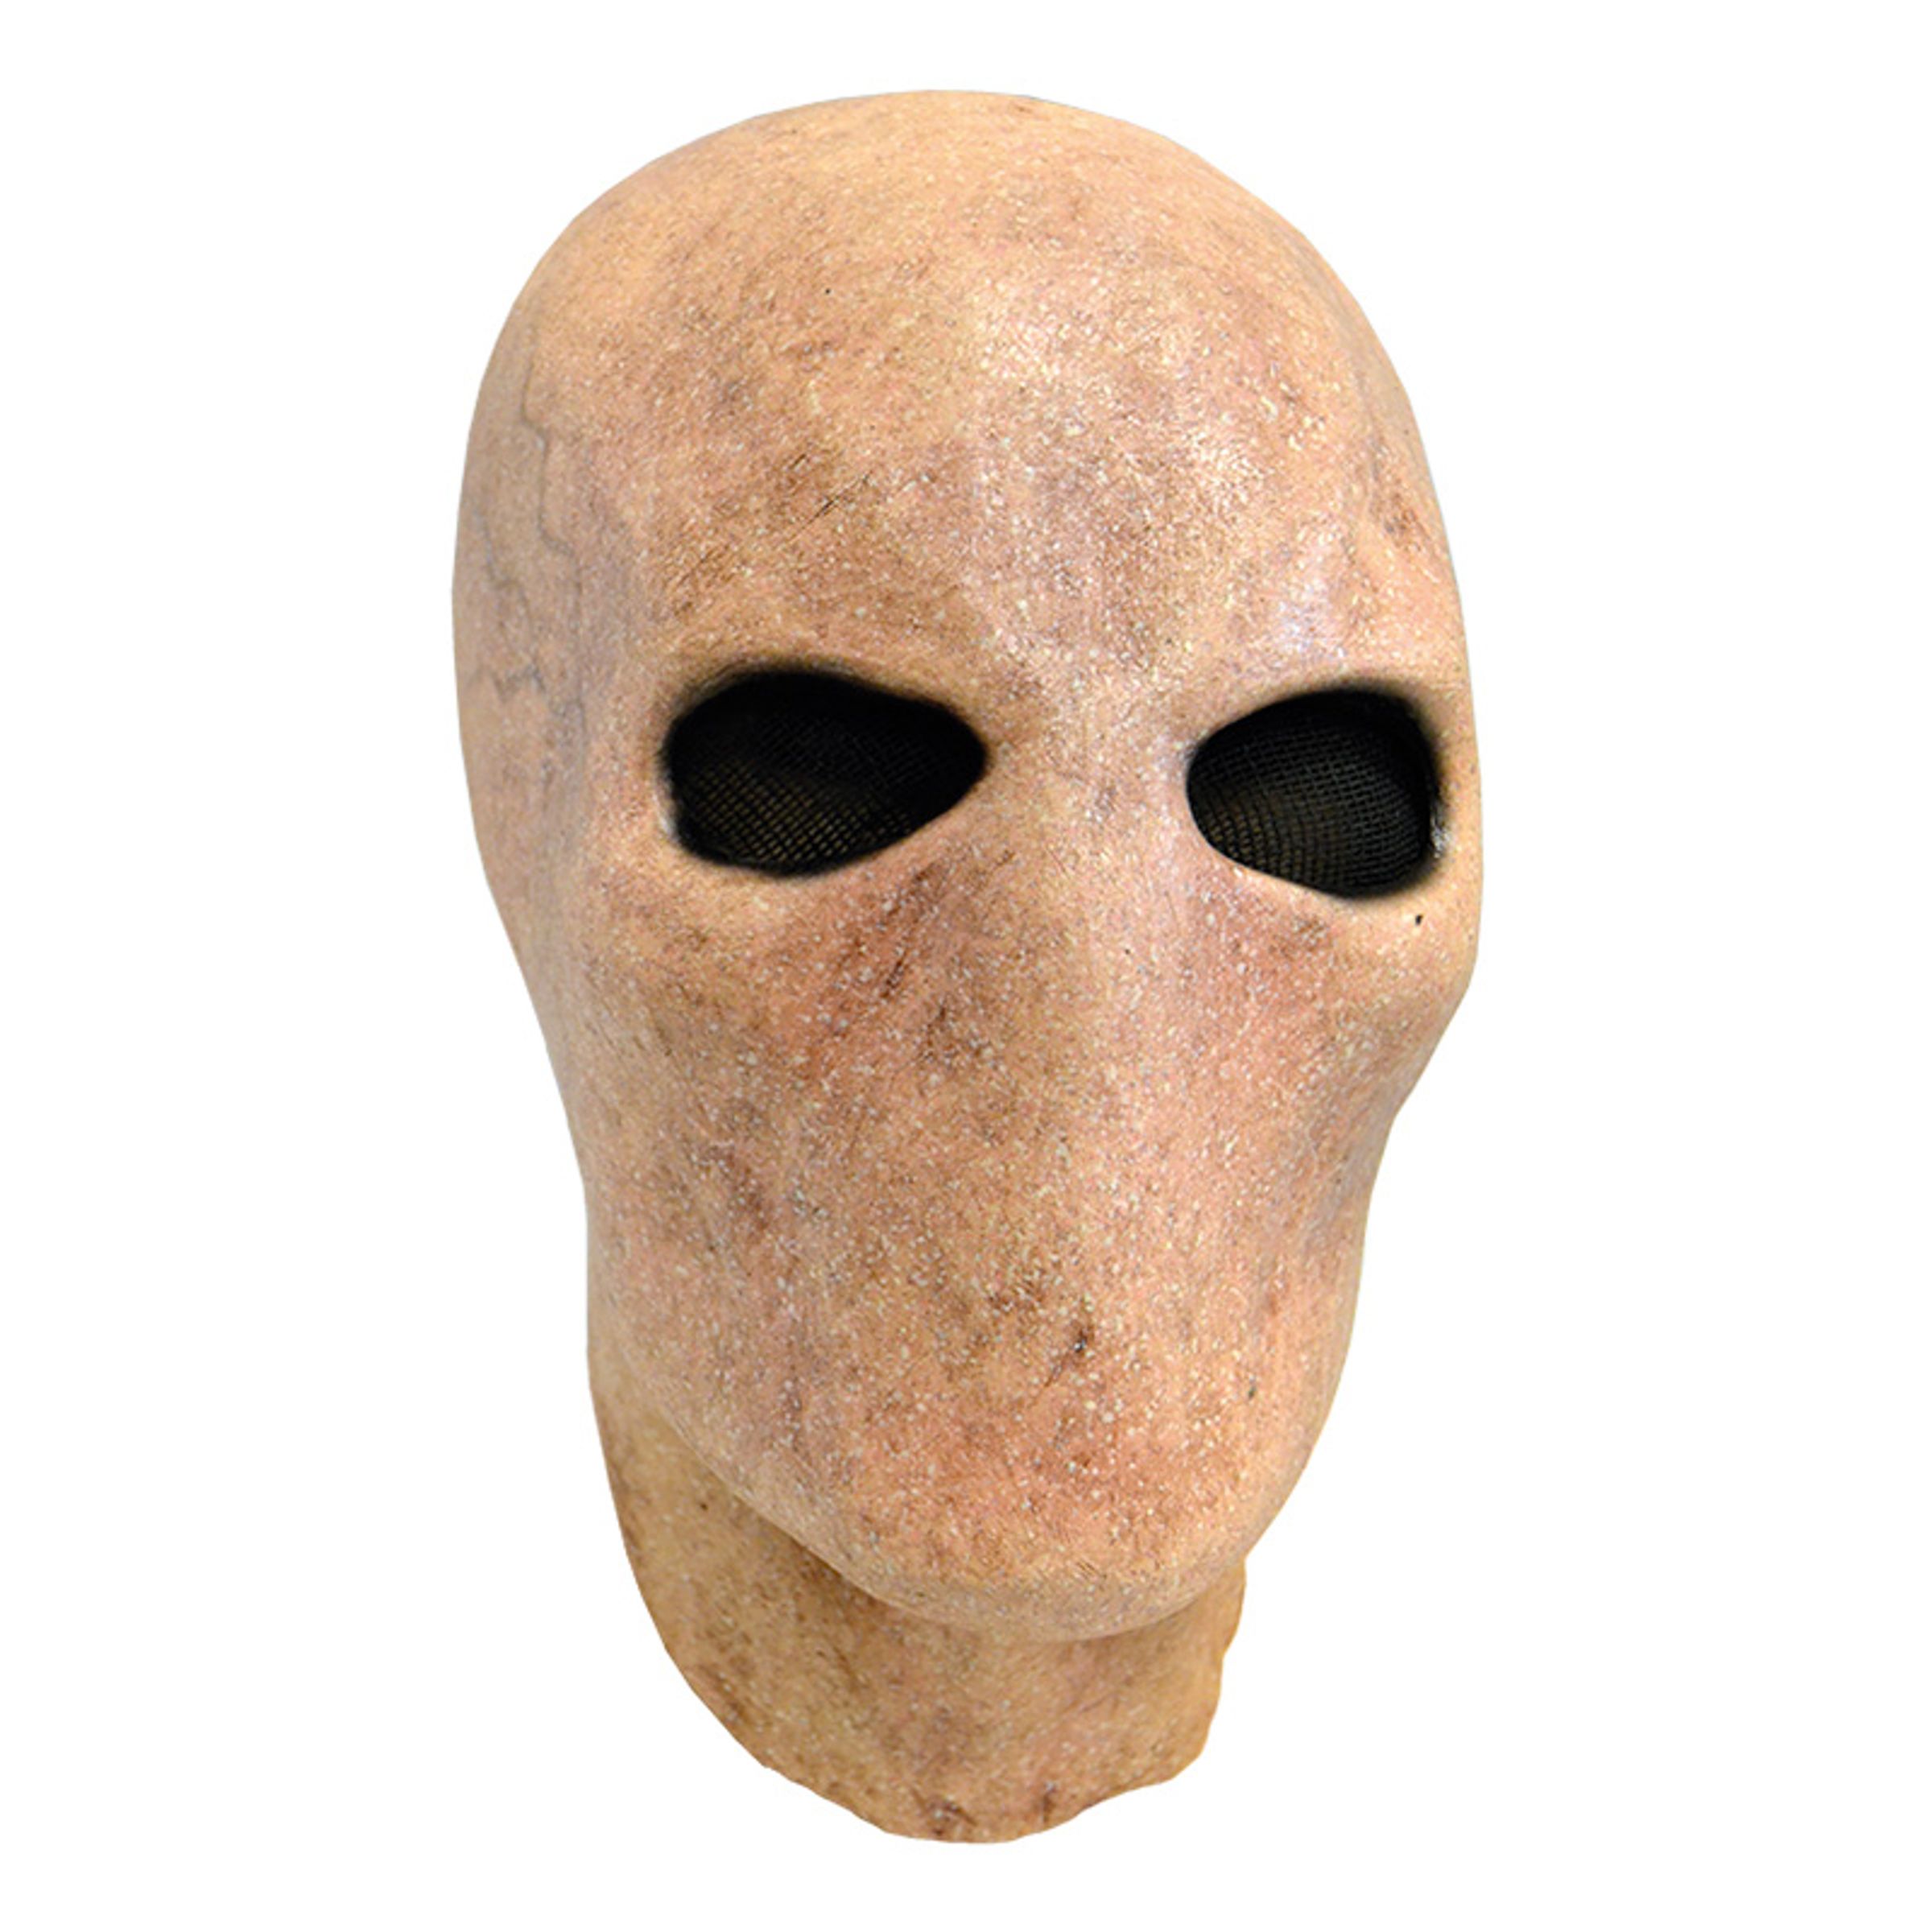 Slender Man Latexmask - One size